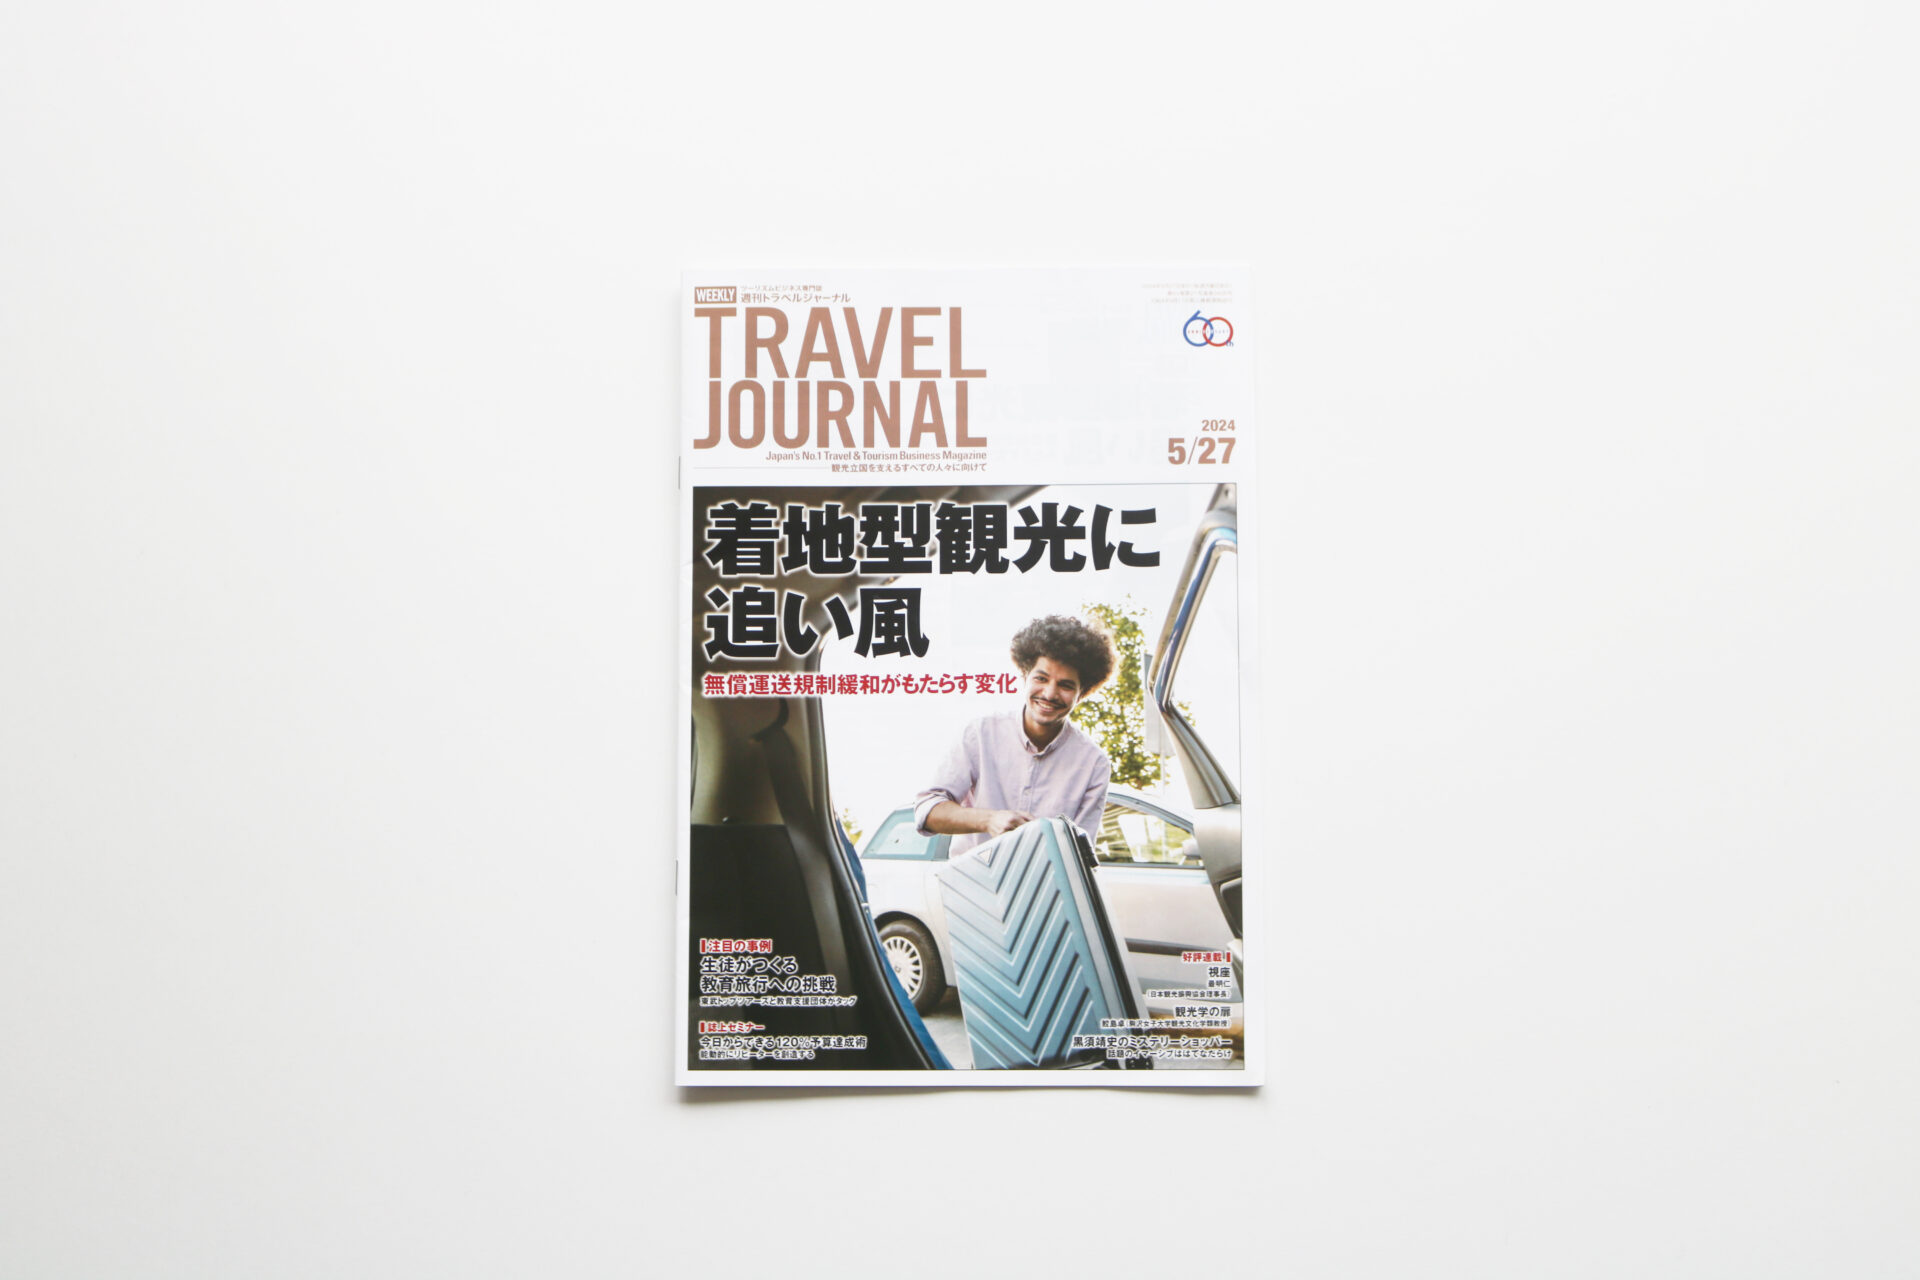 ツーリズムビジネス専門誌「週刊トラベルジャーナル」に、越前鯖江の産業観光が掲載されました。